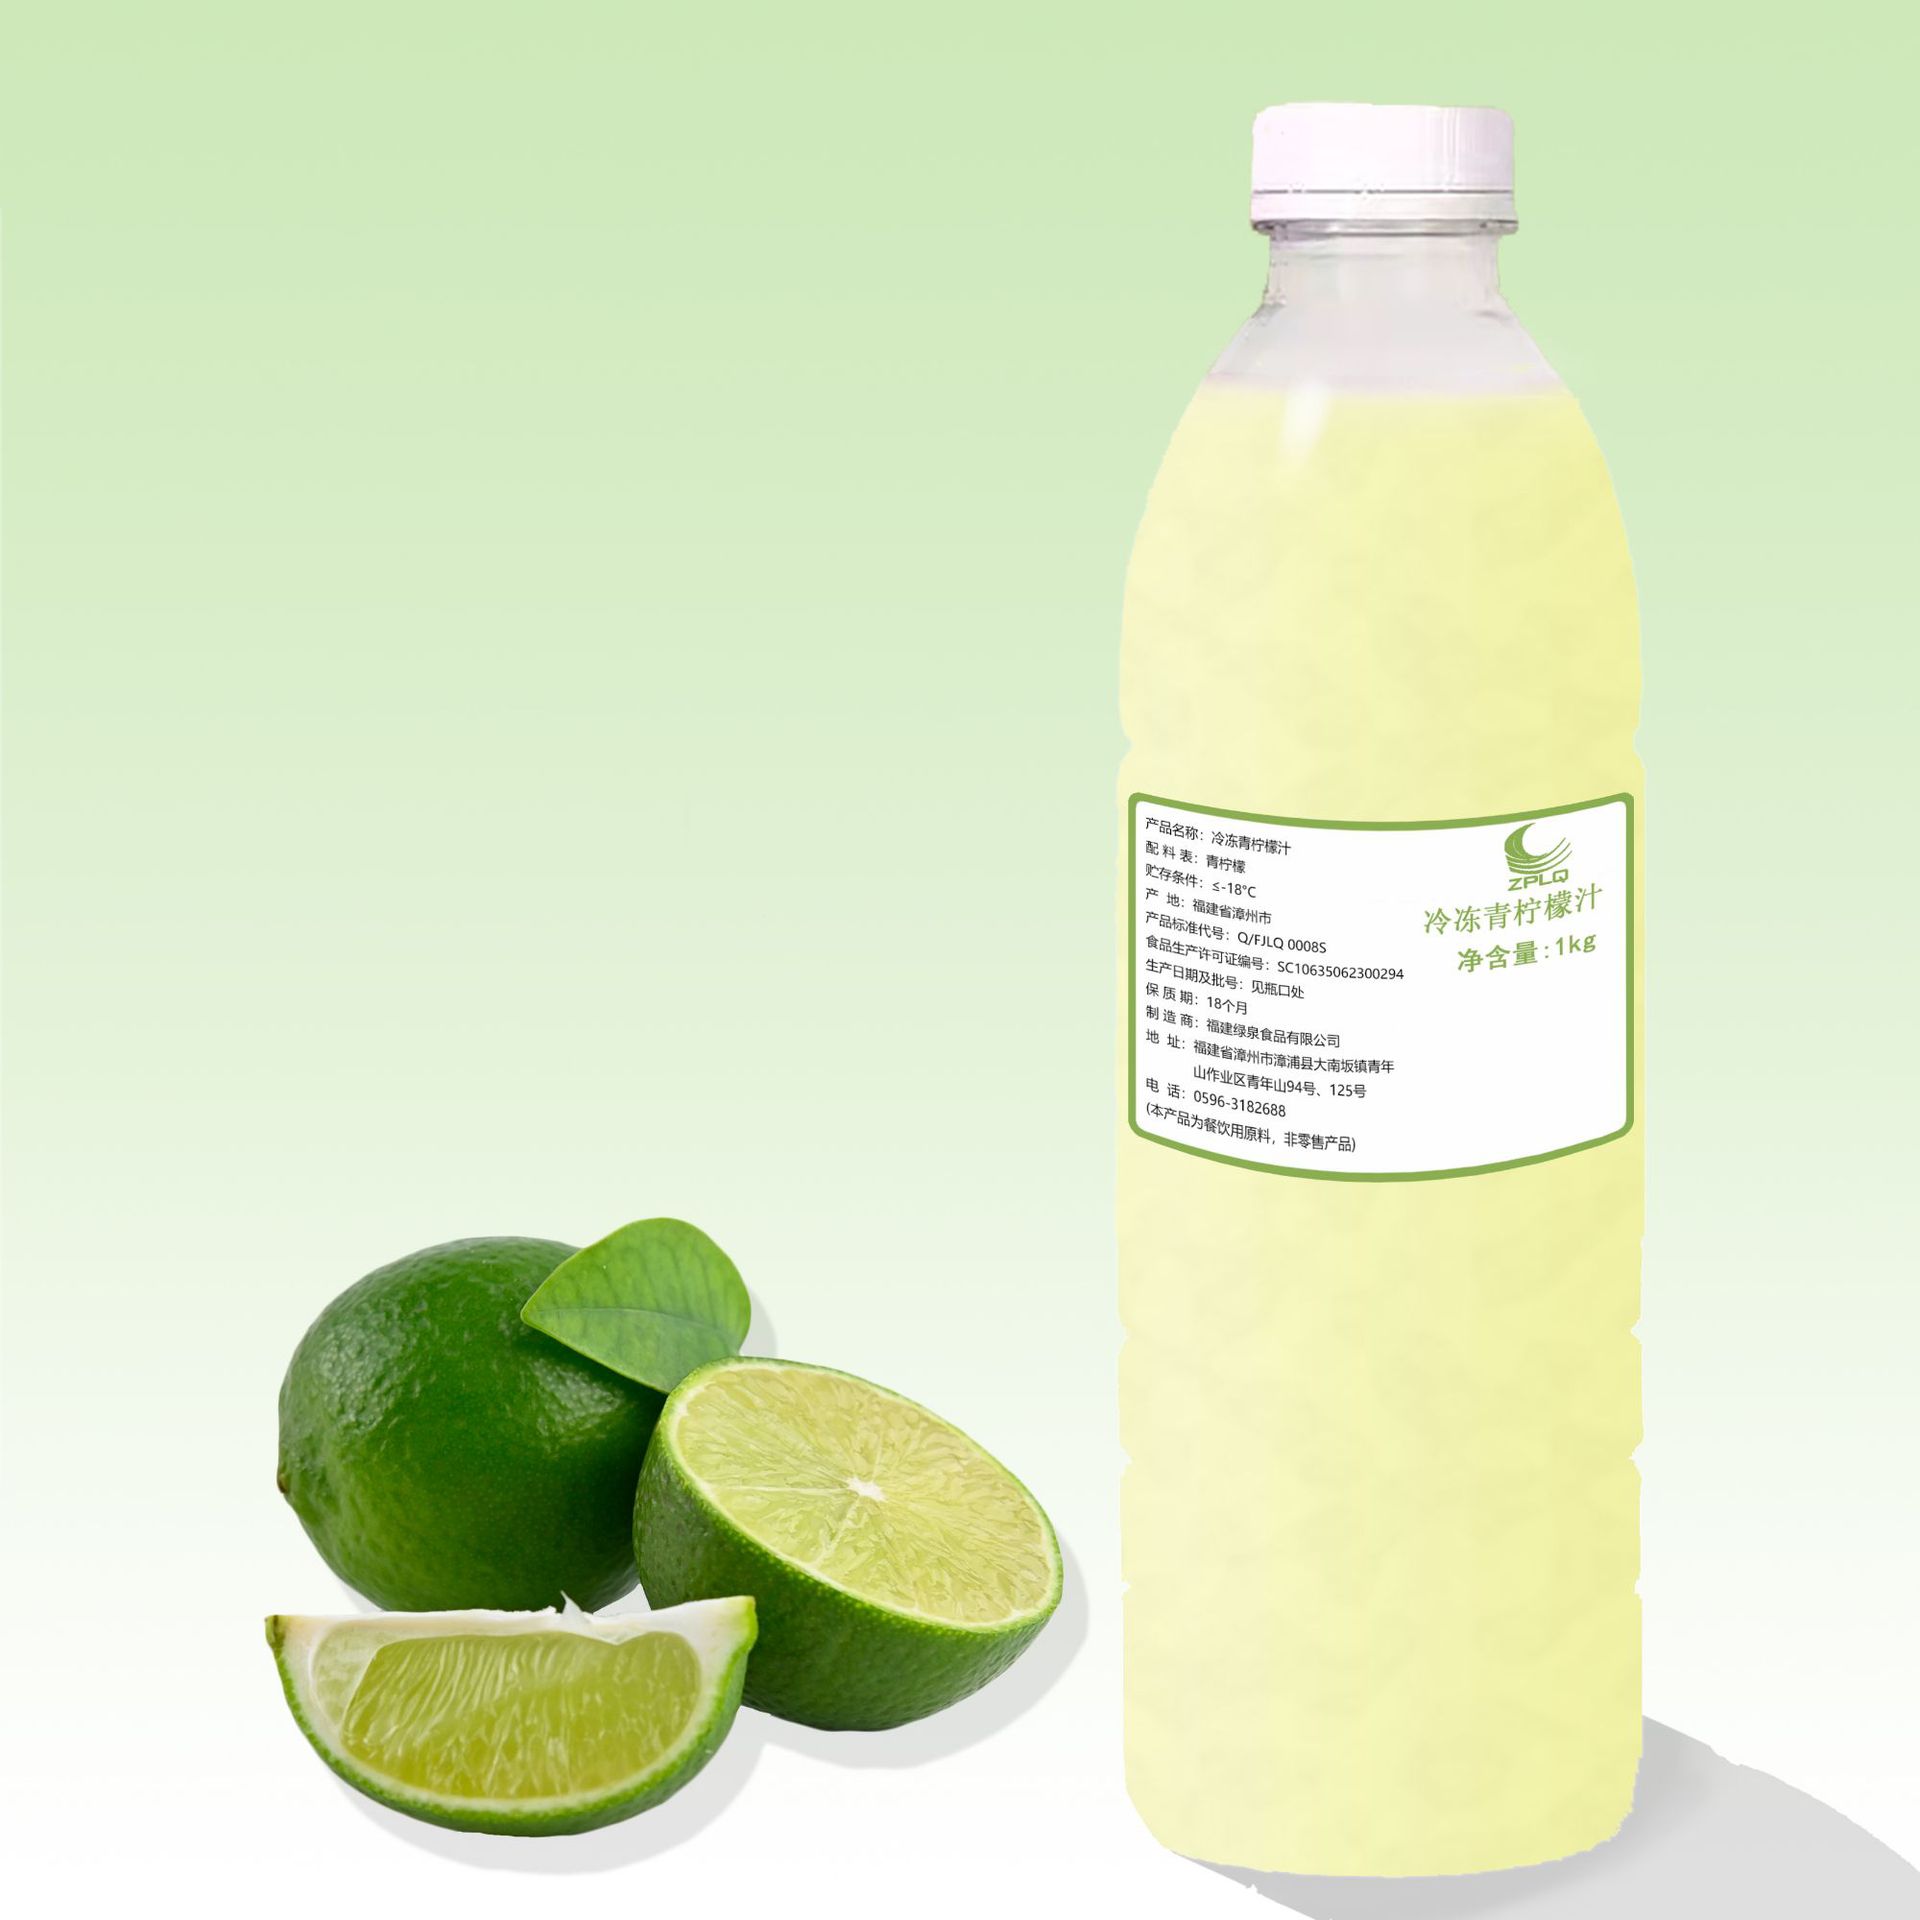 供应22Kg装青柠檬汁NFC冷冻青柠檬汁7-10BX浓缩果汁生产厂家直销